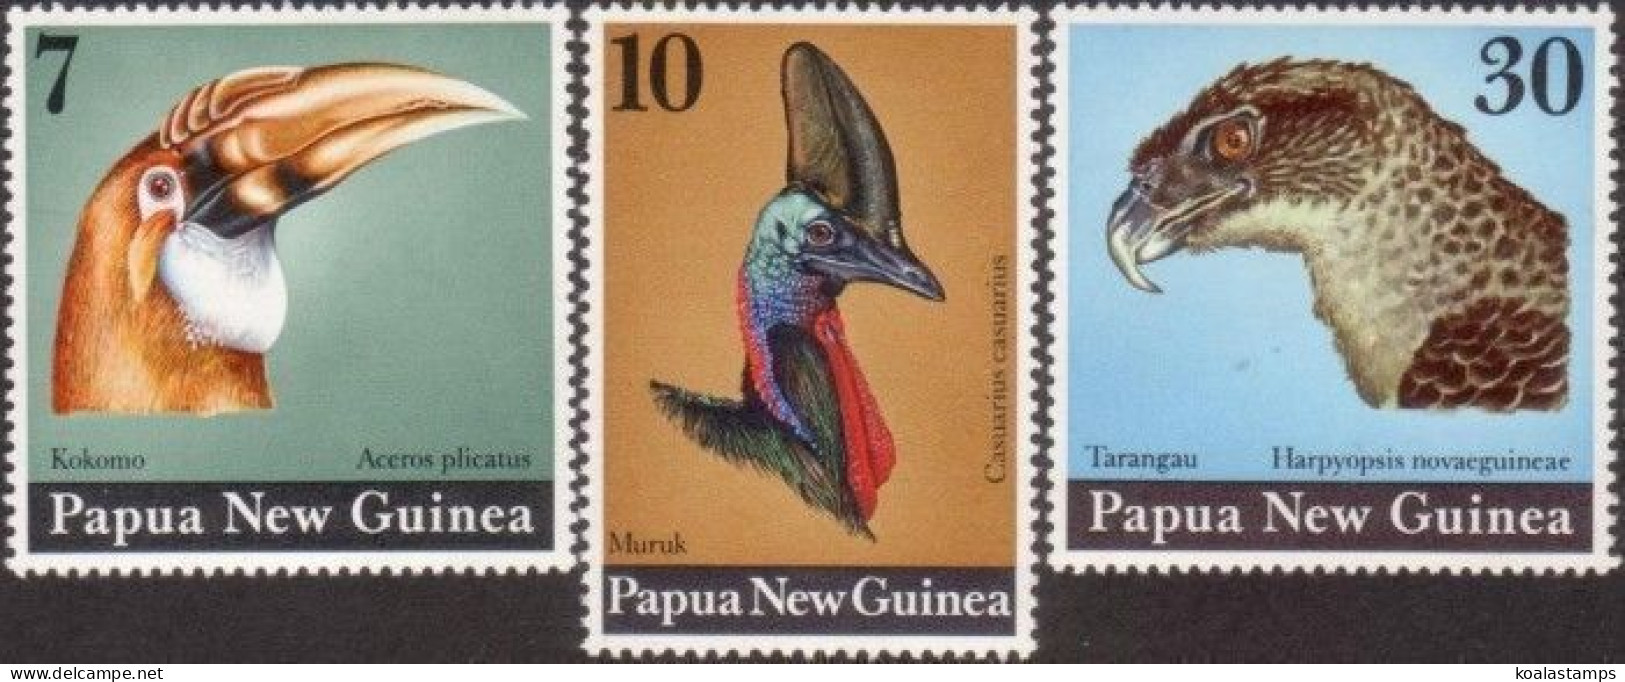 Papua New Guinea 1974 SG270-272 Large Birds Heads Set MNH - Papúa Nueva Guinea